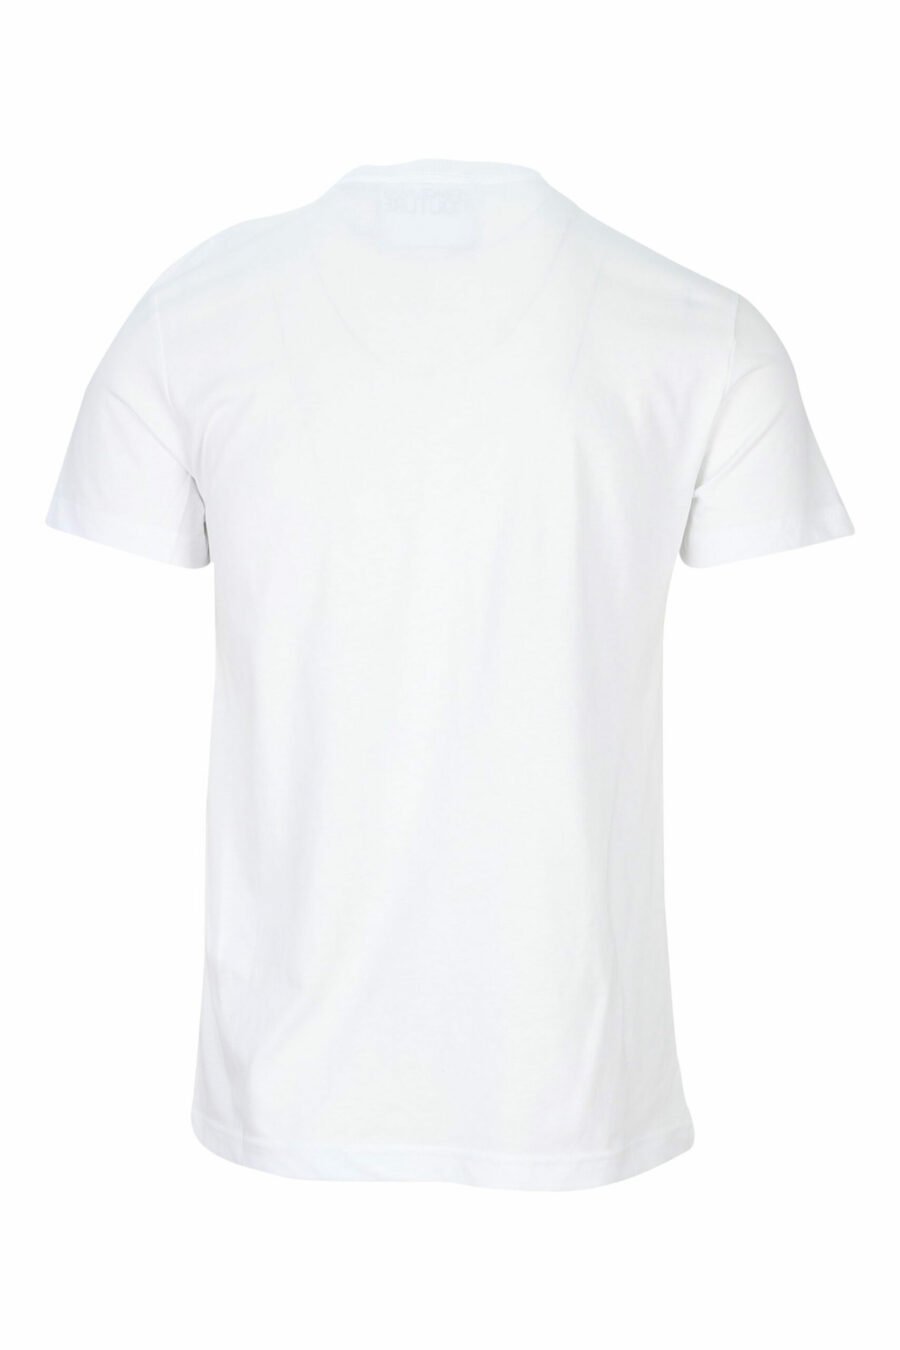 Camiseta blanca con minilogo circular negro - 8052019468526 1 scaled